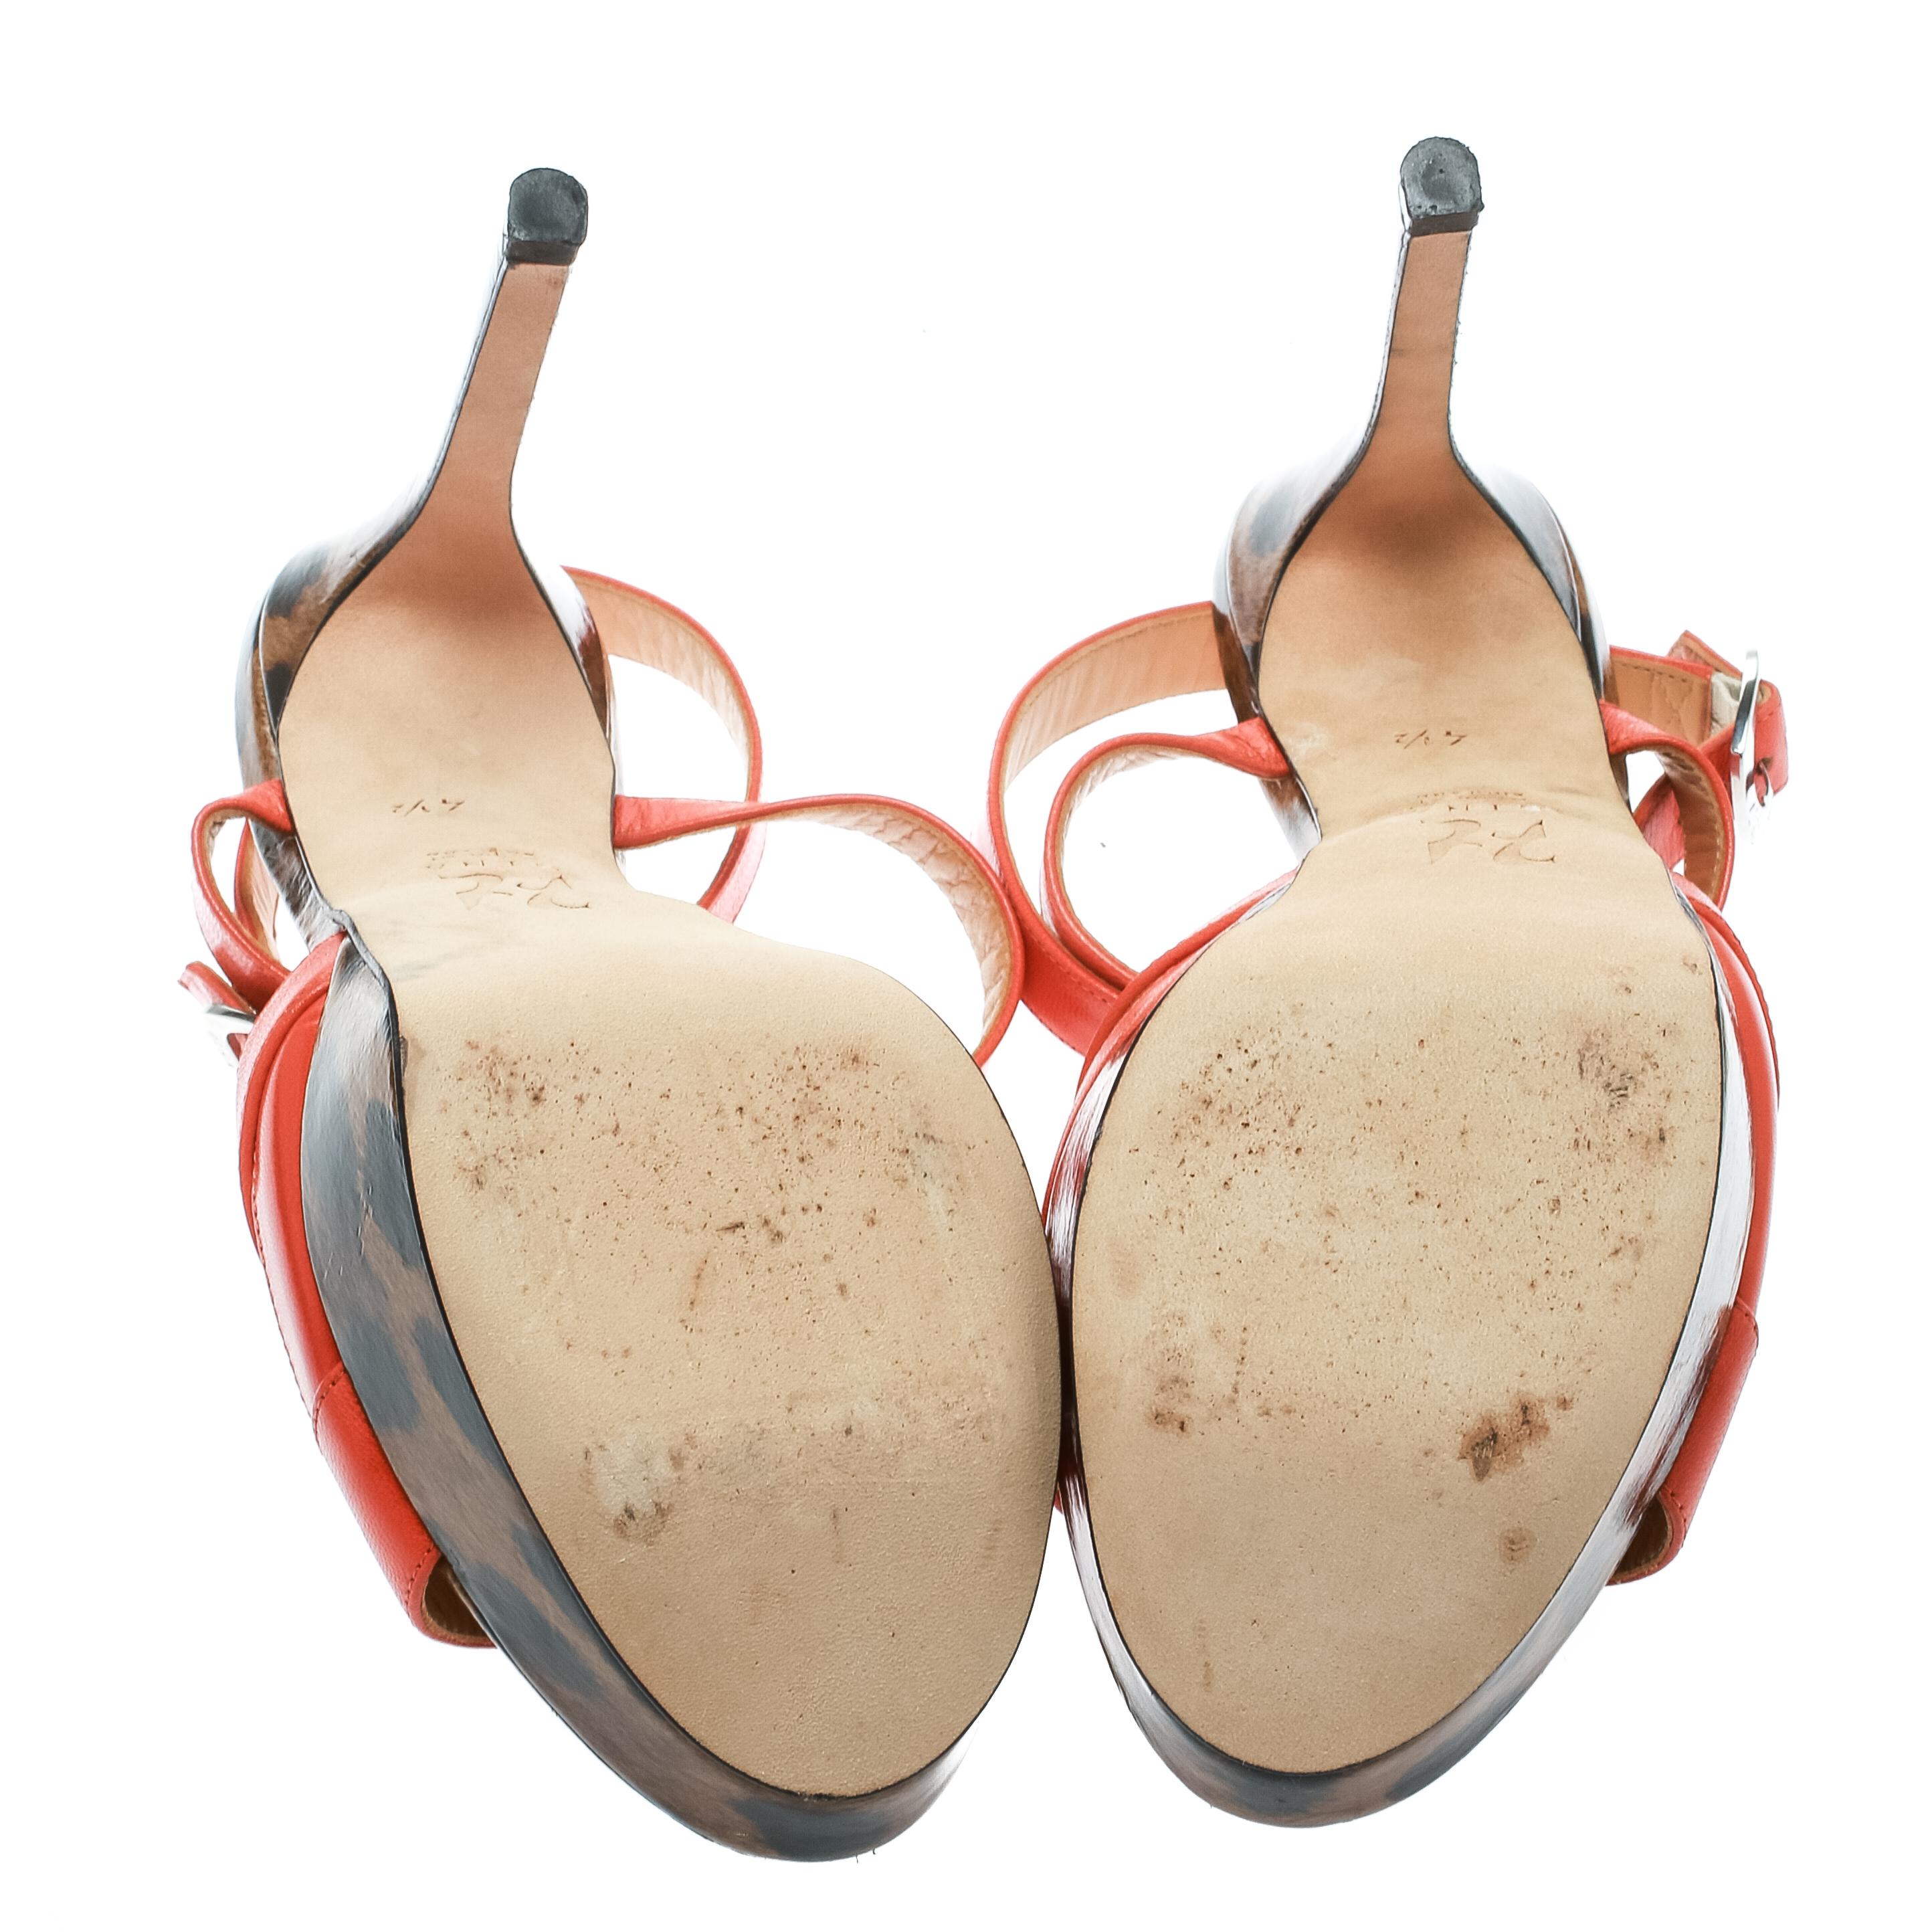 Gina Orange Leather Ankle Strap Platform Sandals Size 37.5 3